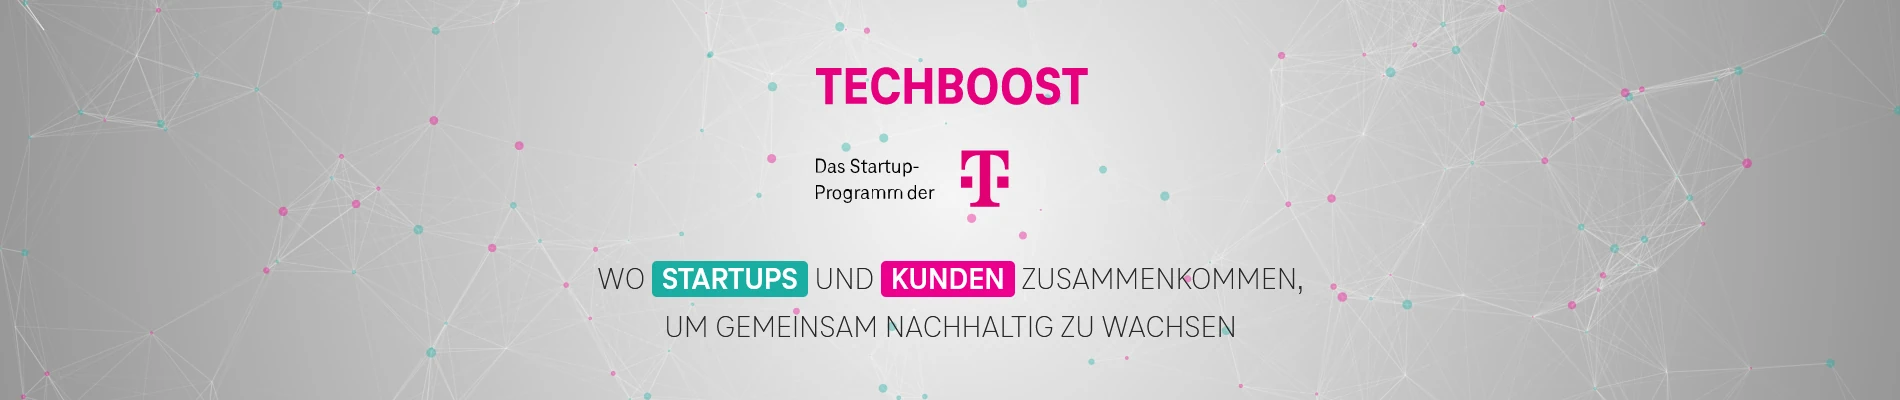 CampusGenius ist beim Techboost der Deutschen Telekom dabei